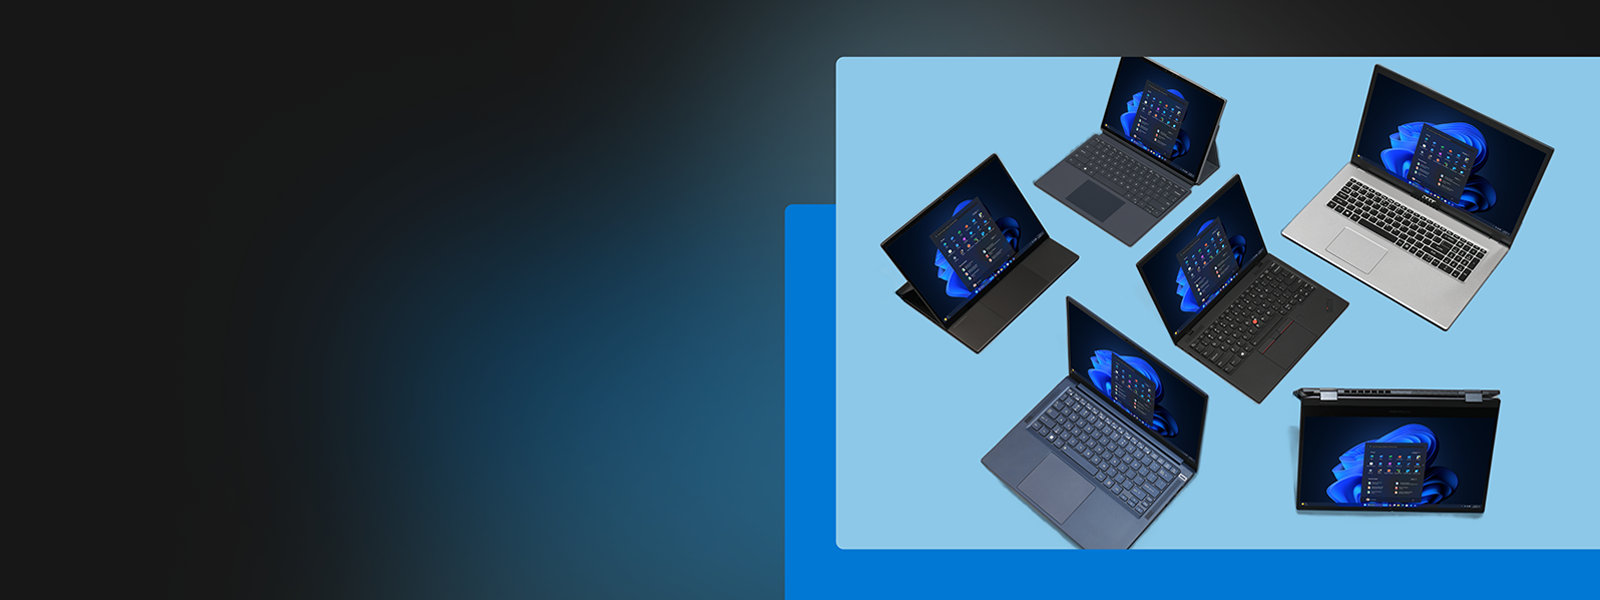 Windows 11 のスタート画面を表示している複数のノート PC と 2 in 1 のデバイス